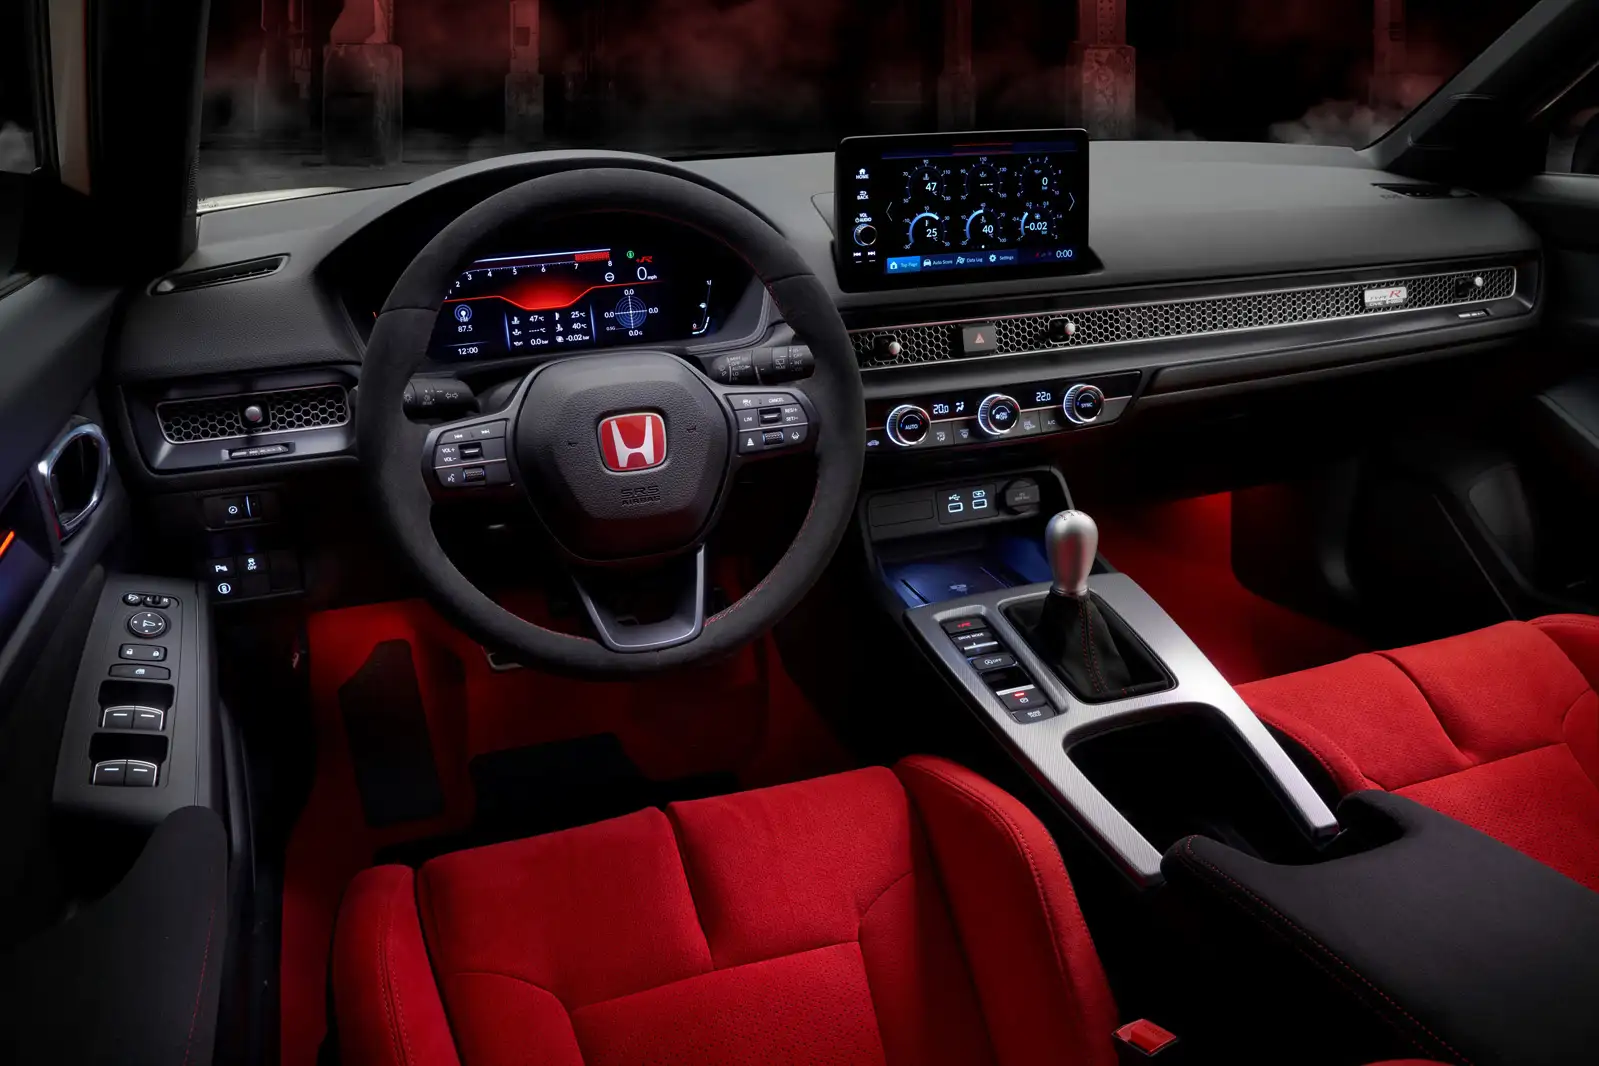 Honda Civic Type-R interior - Cockpit